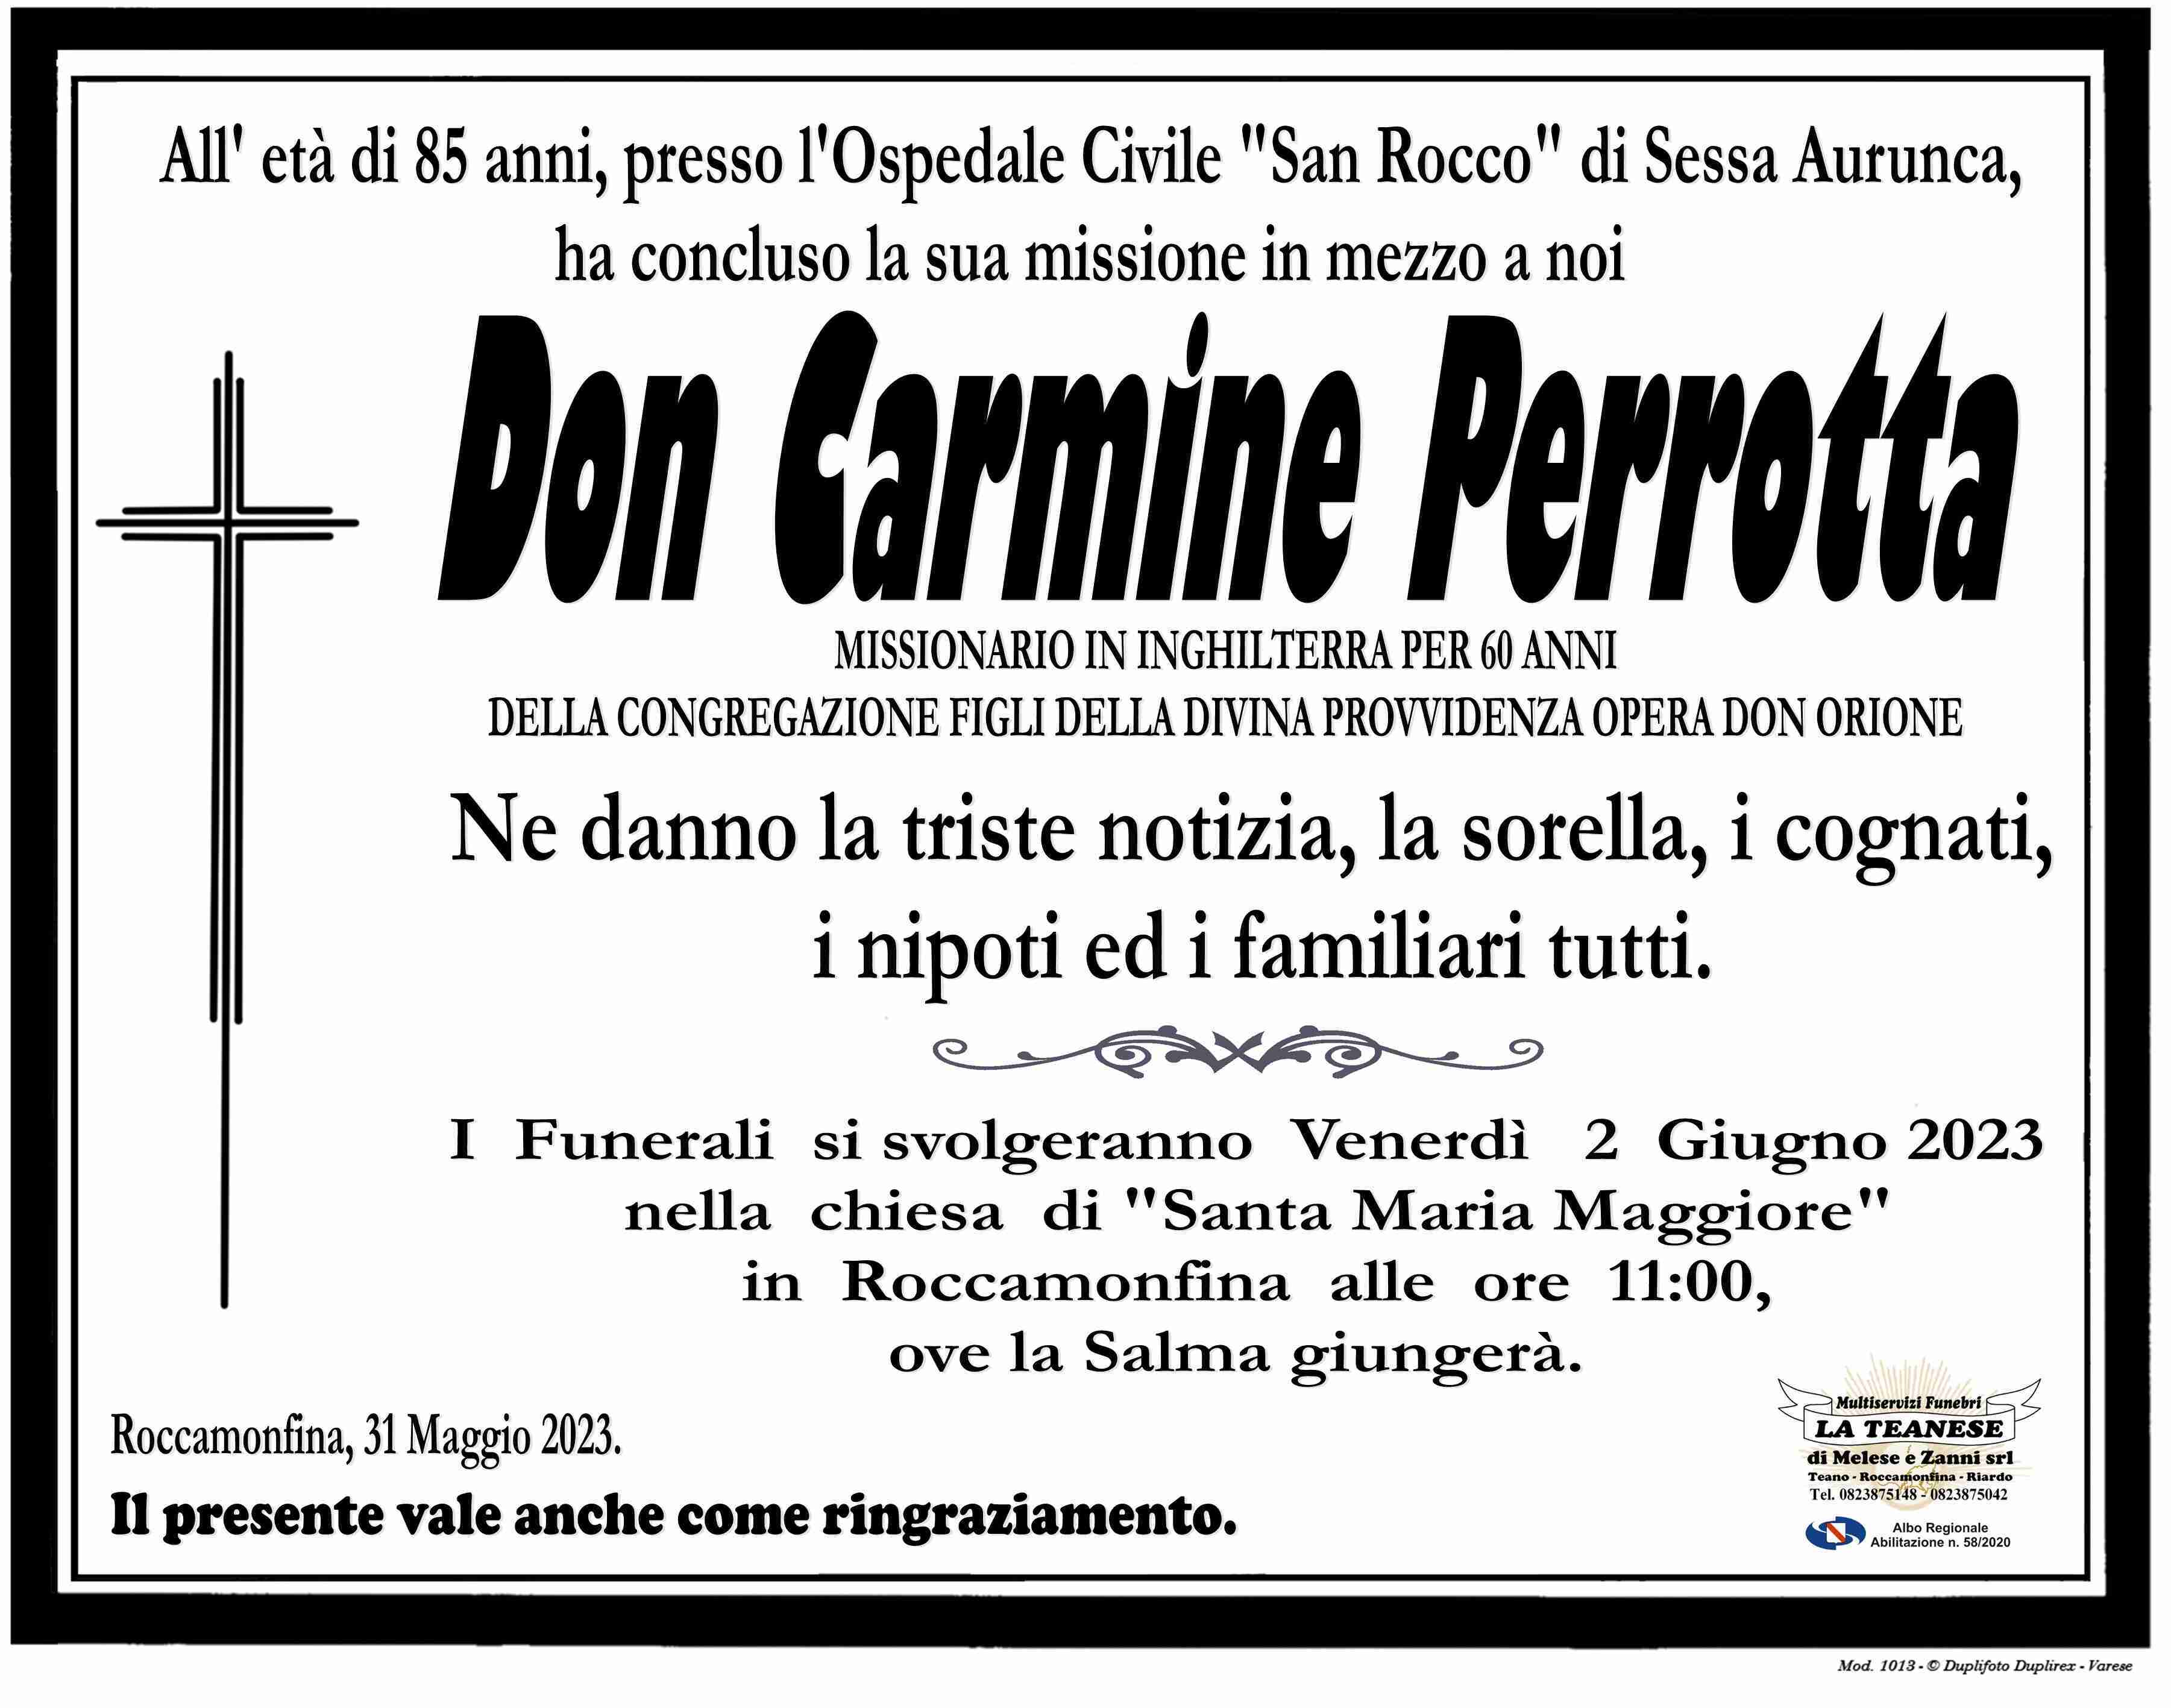 Don Carmine Perrotta